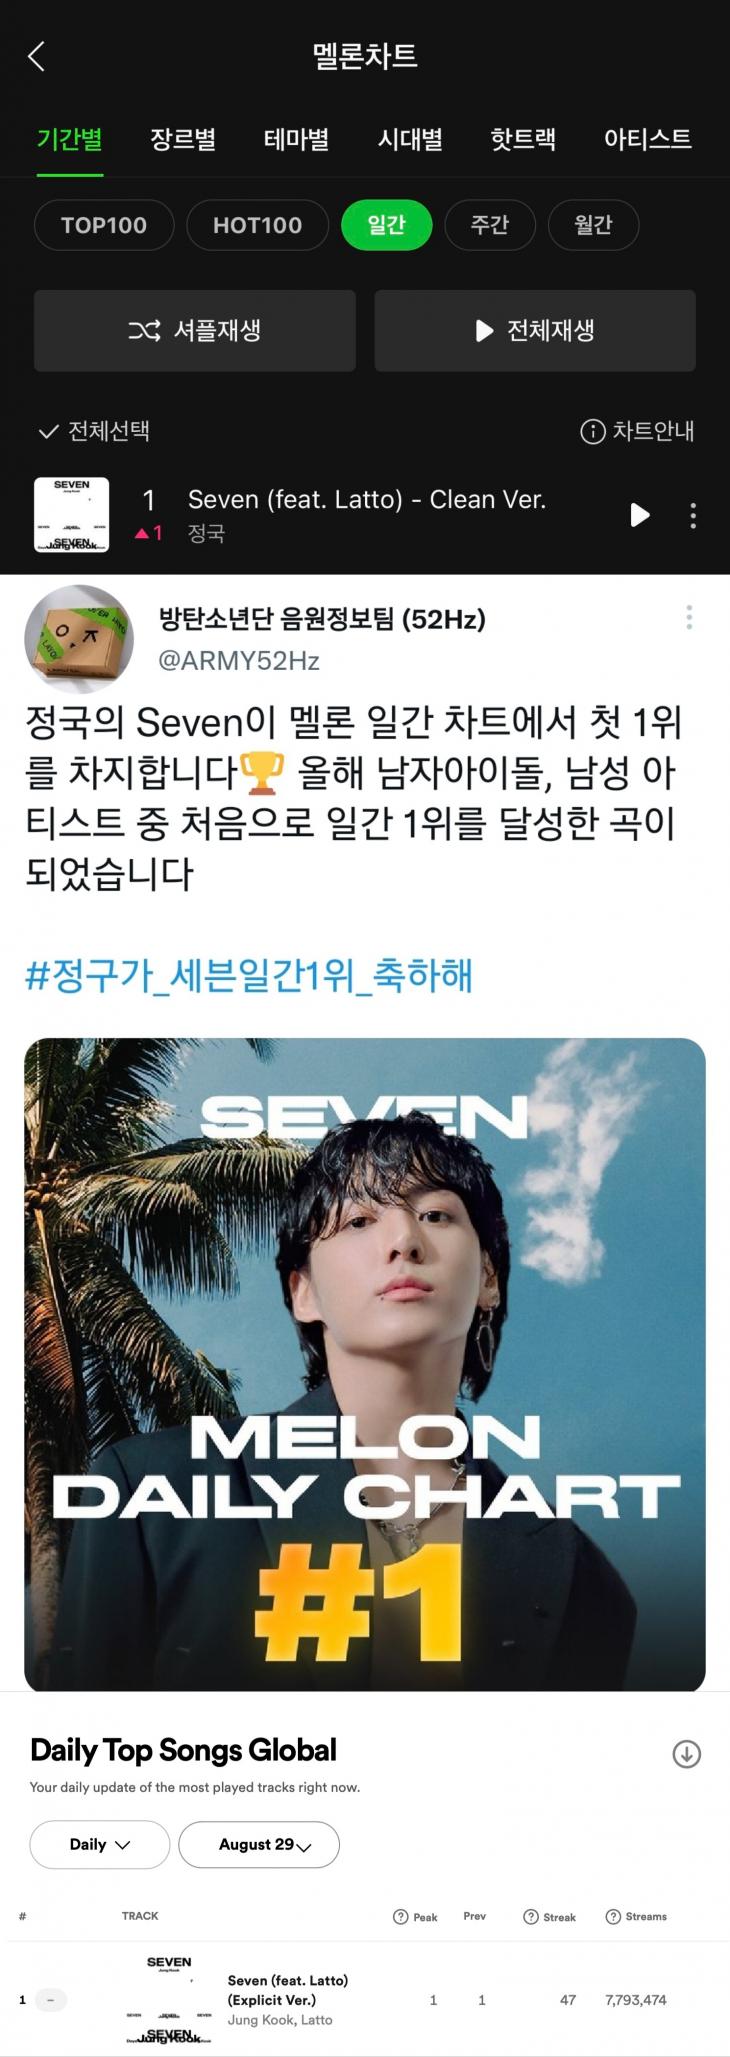 정국의 솔로 싱글 'Seven'(세븐)은 국내 최대 음원 플랫폼 멜론의 일간 차트에서 1위를 차지